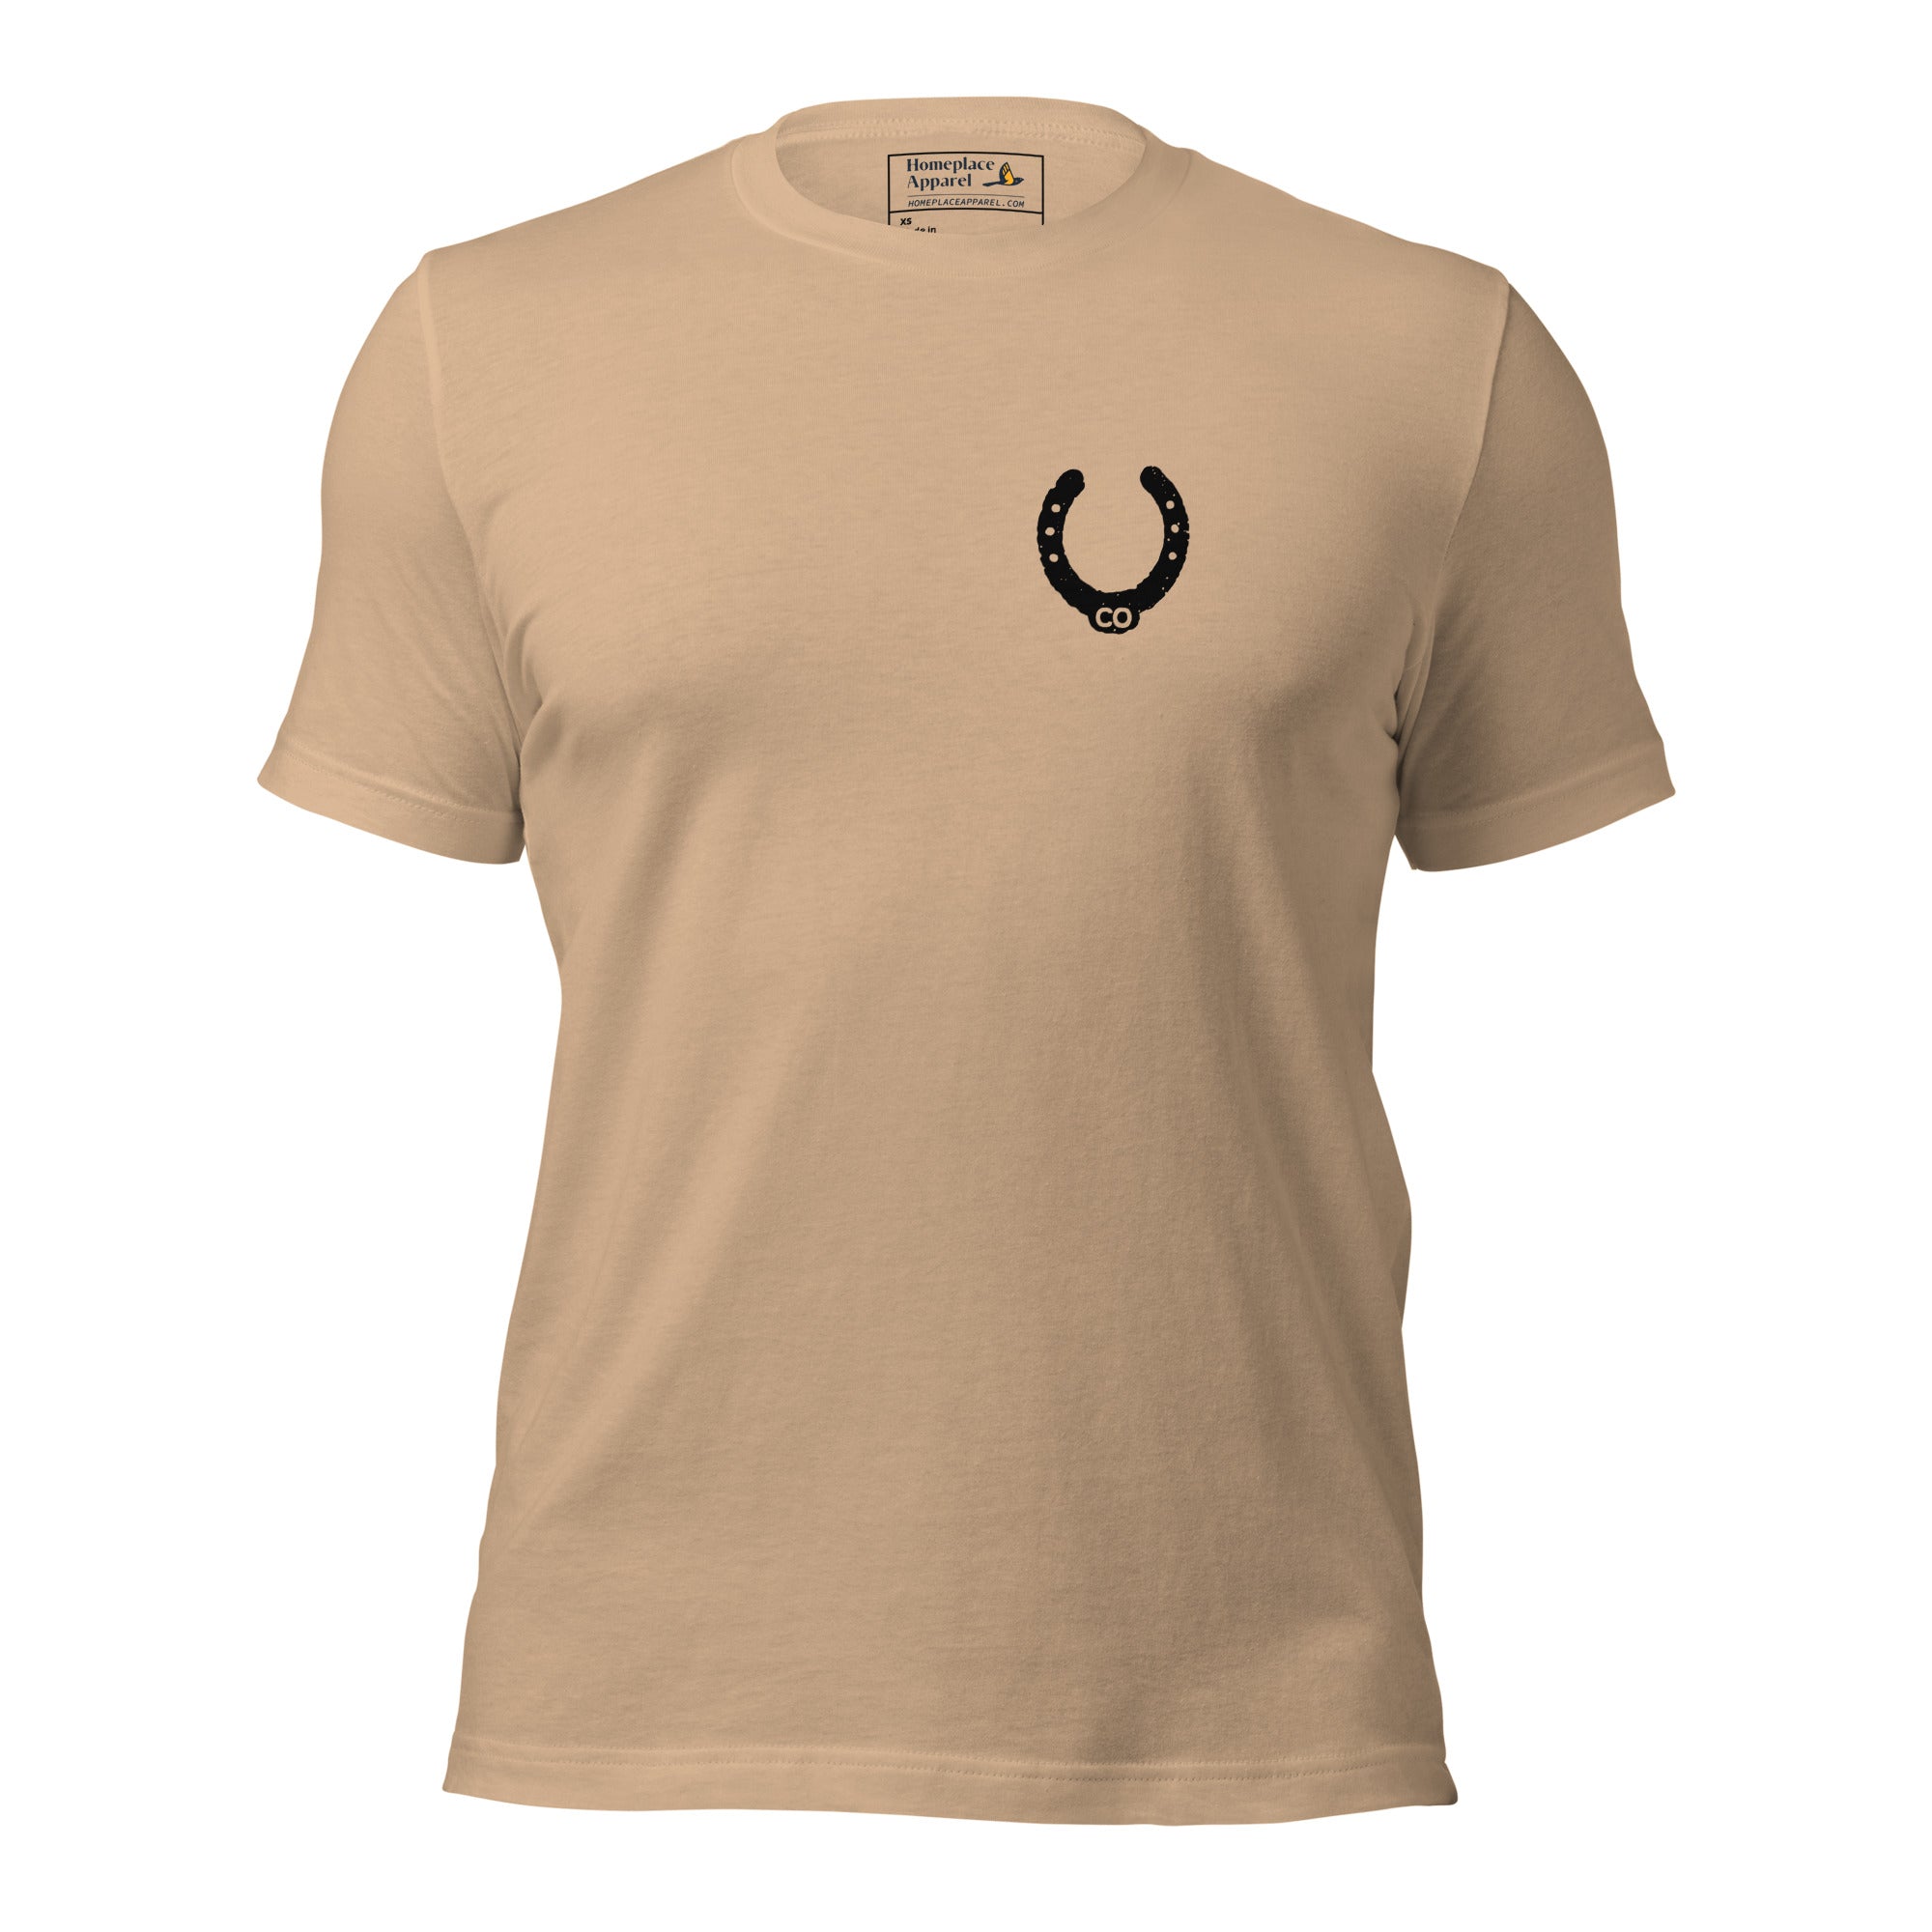 unisex-staple-t-shirt-tan-front-650c53ce4de03.jpg